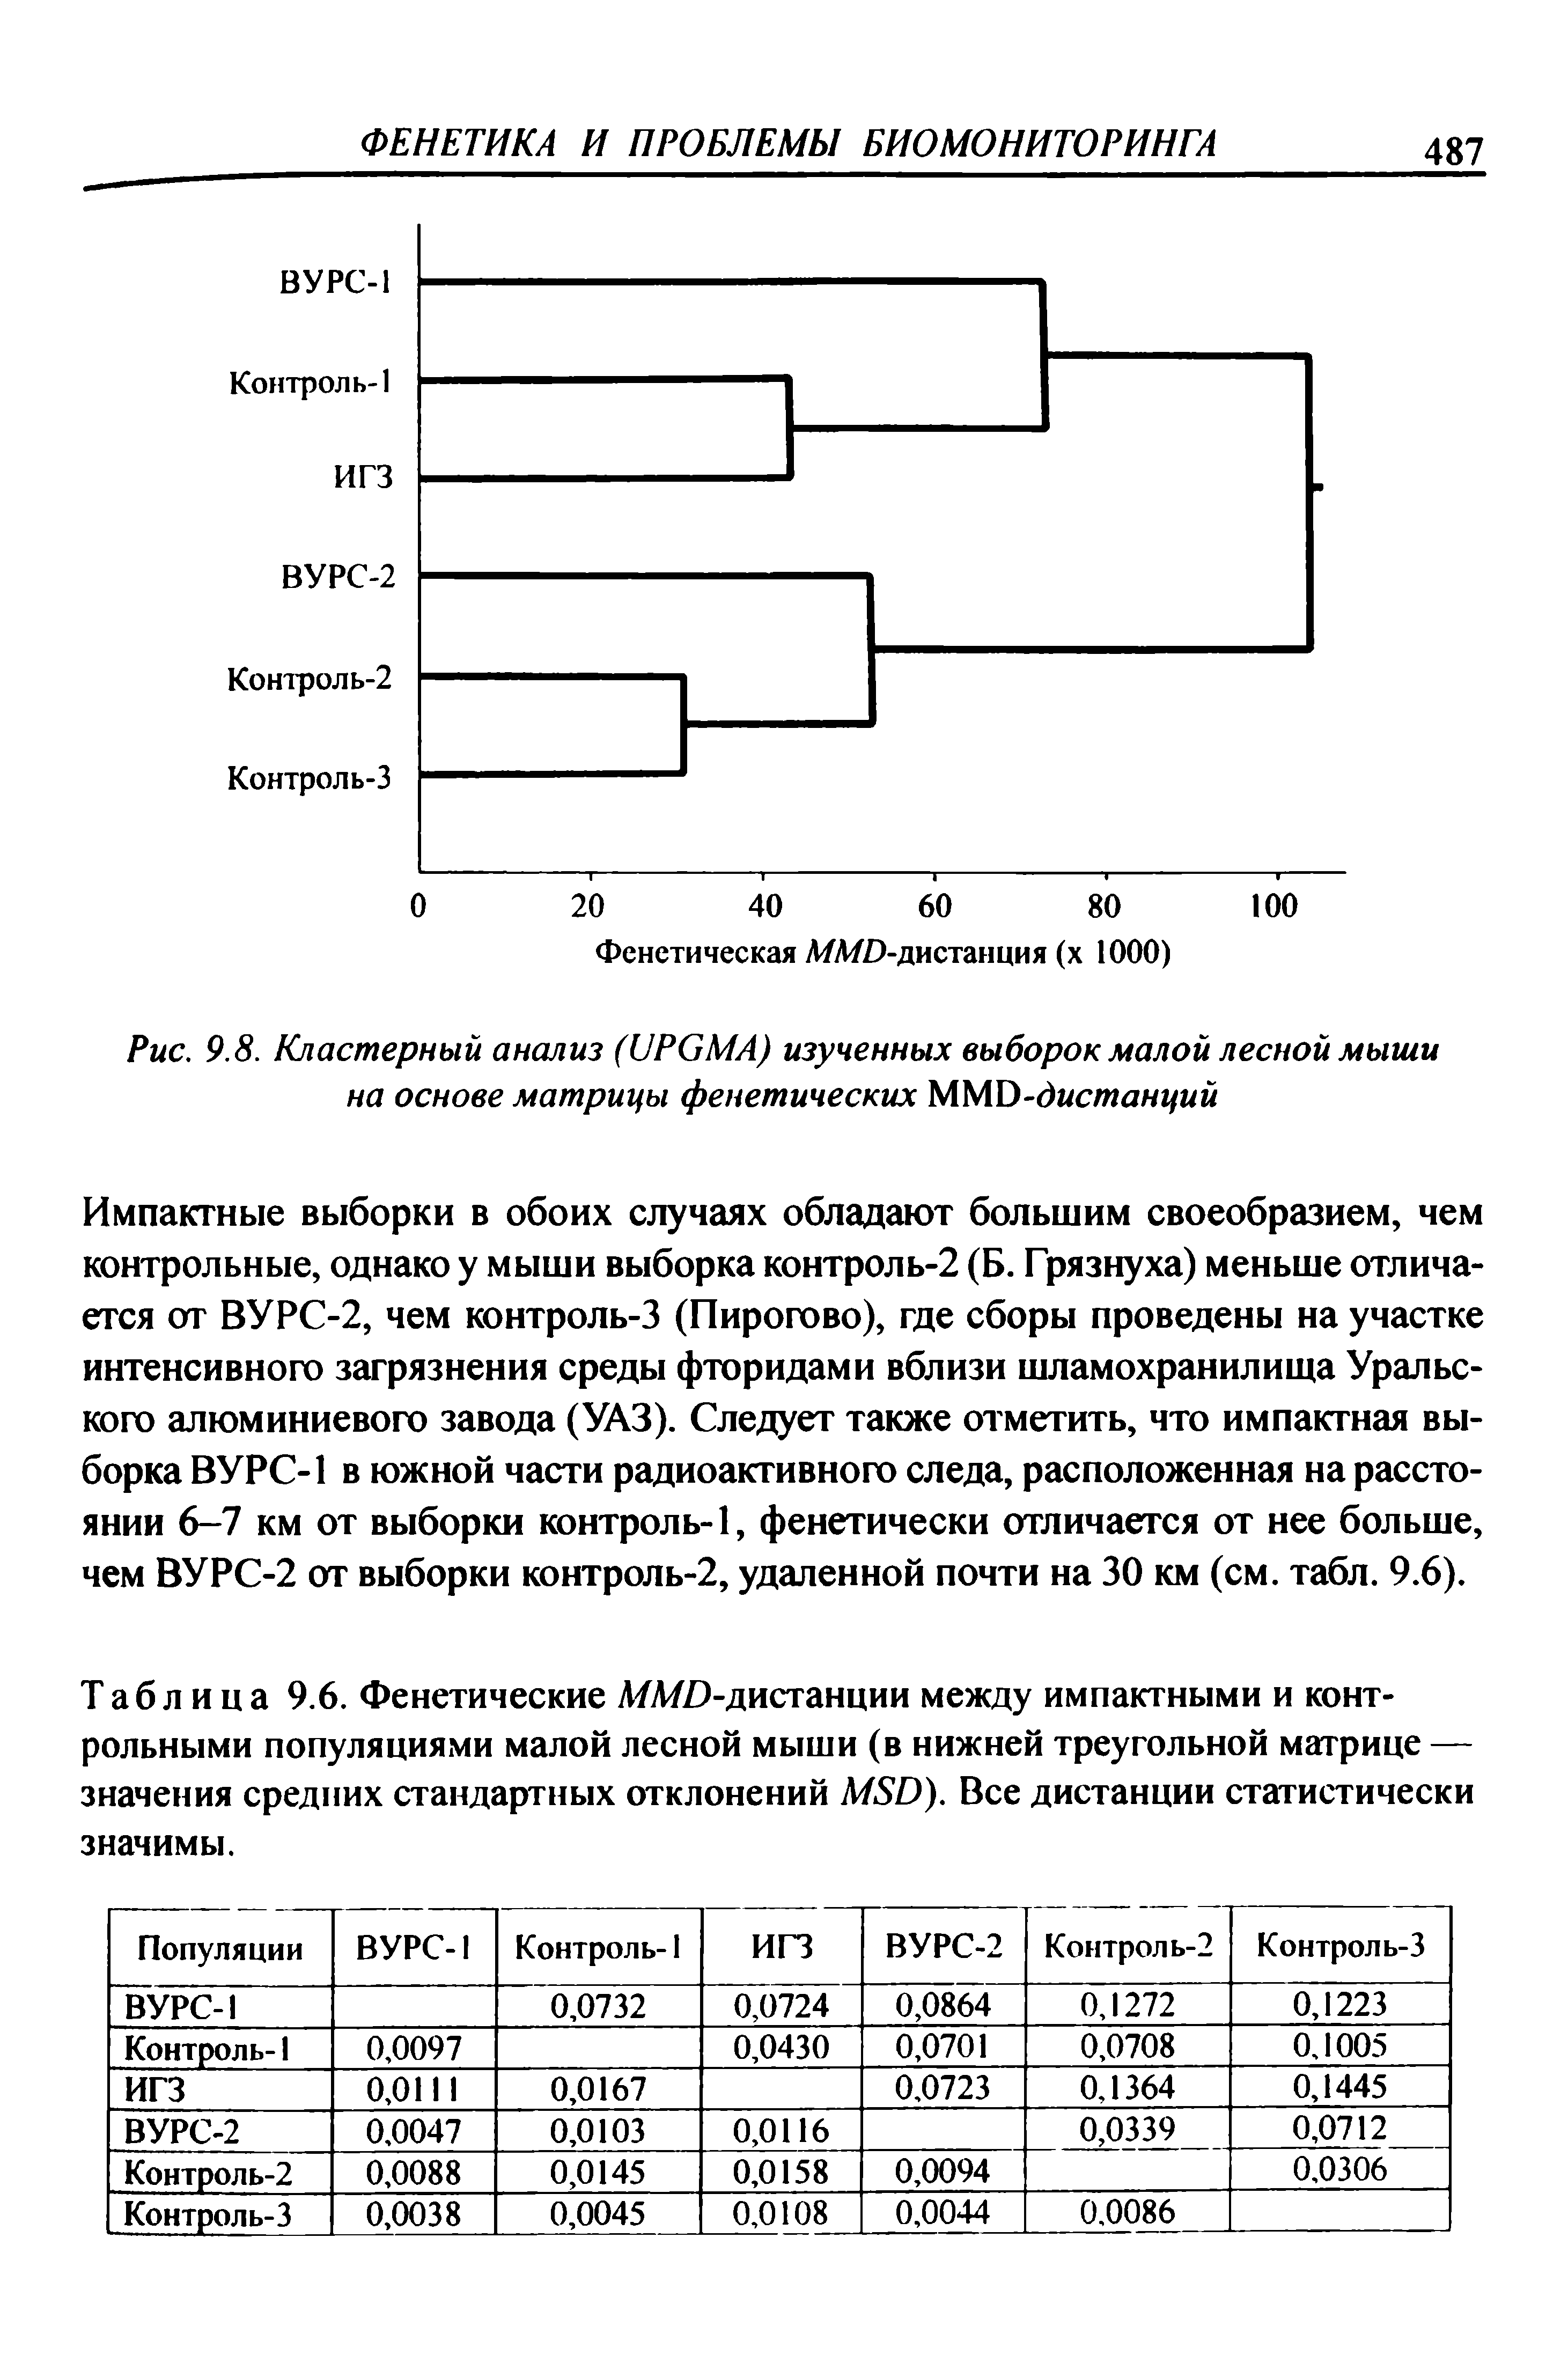 Таблица 9.6. Фенетические Л/Л/ )-дистанции между импактными и контрольными популяциями малой лесной мыши (в нижней треугольной матрице — значения средних стандартных отклонений МБй). Все дистанции статистически значимы.